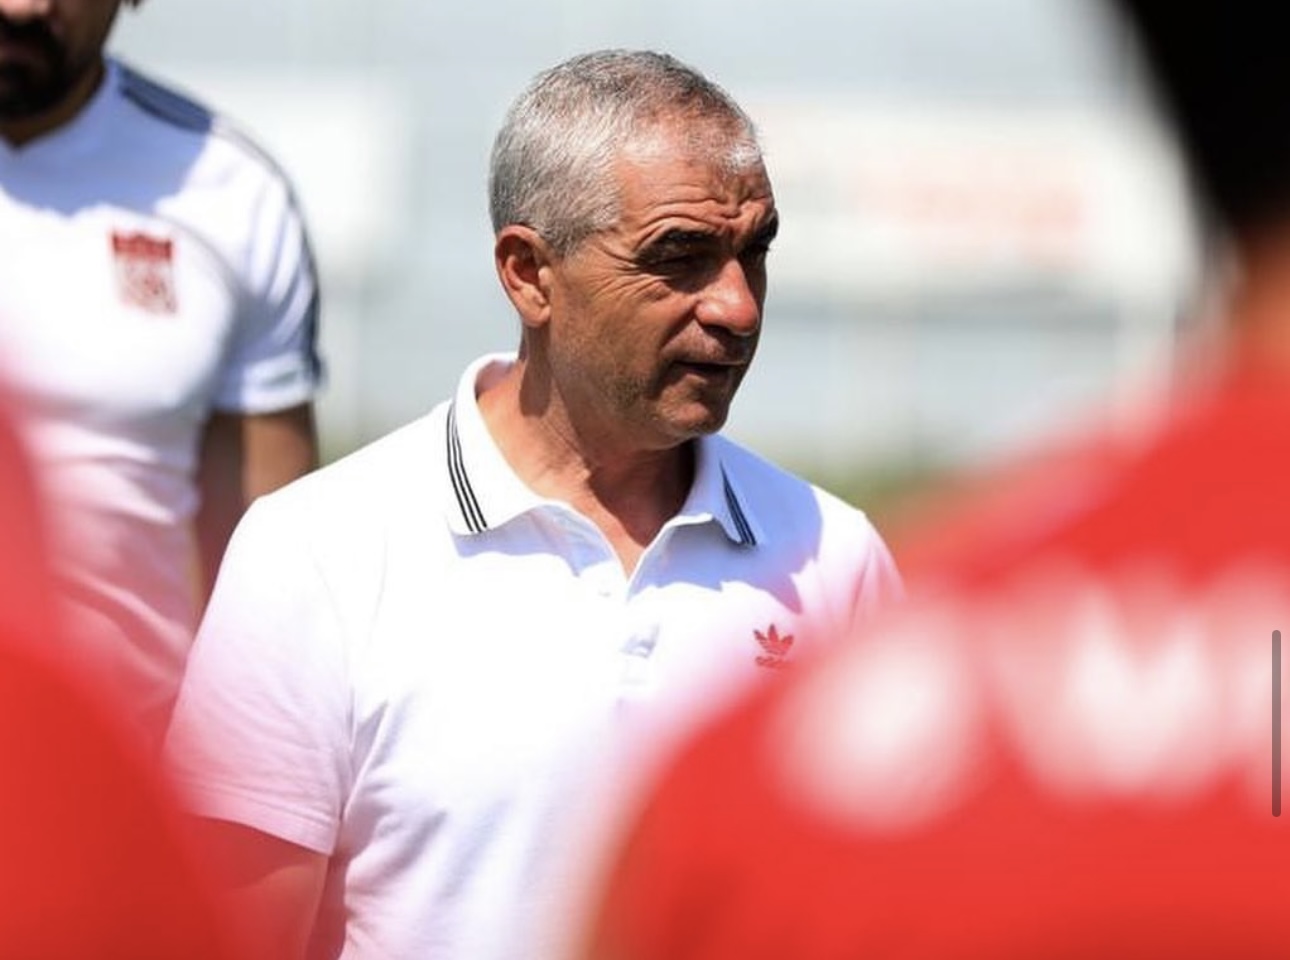  ”Yılport Samsunspor’dan Teklif Aldım Ama Beşiktaş’ı Bekliyorum”